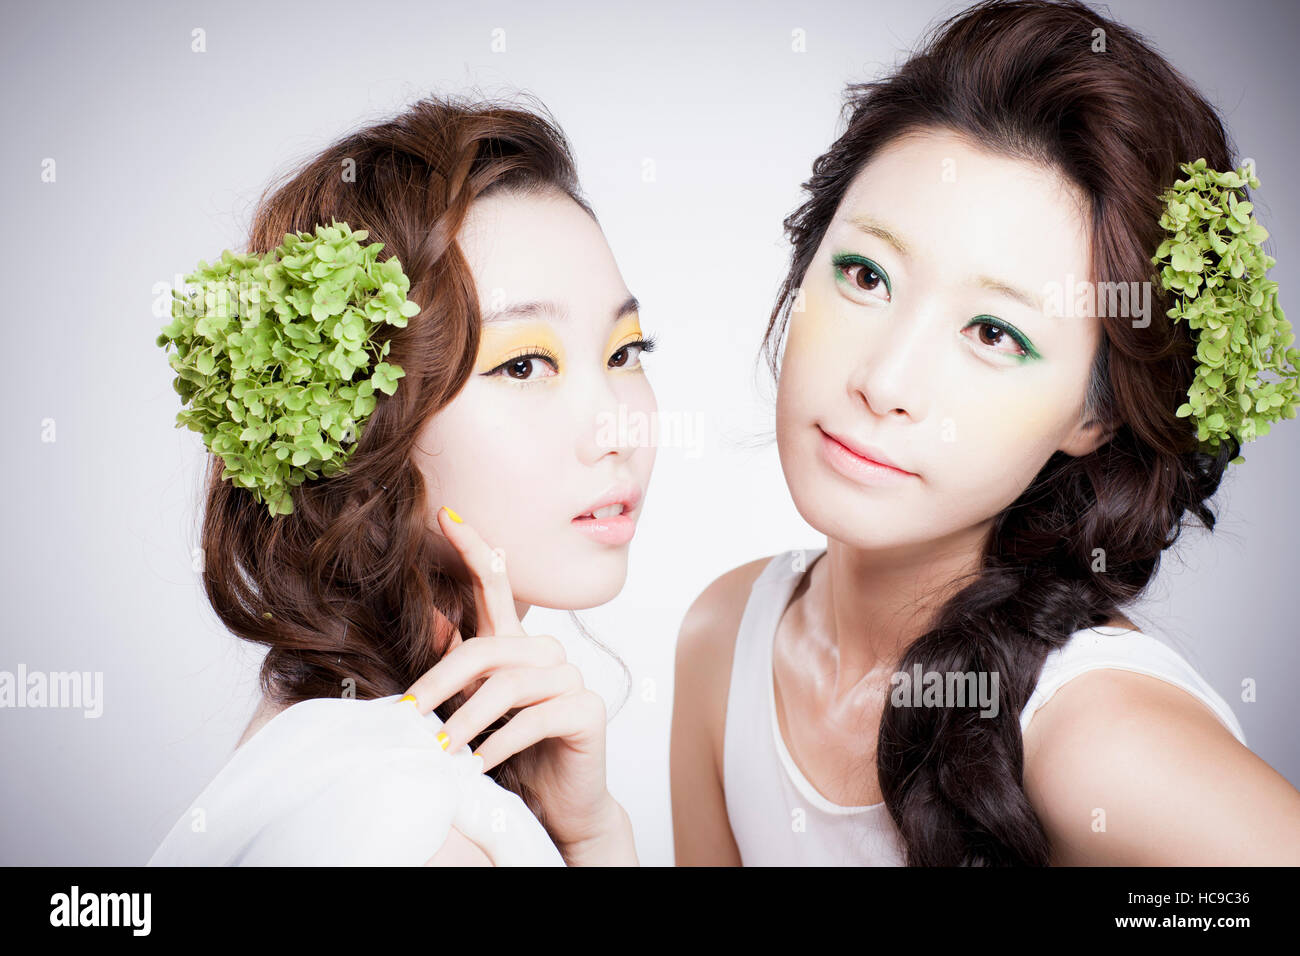 Retrato de dos jóvenes mujeres coreanas con flores de color verde en su largo cabello ondulado Foto de stock